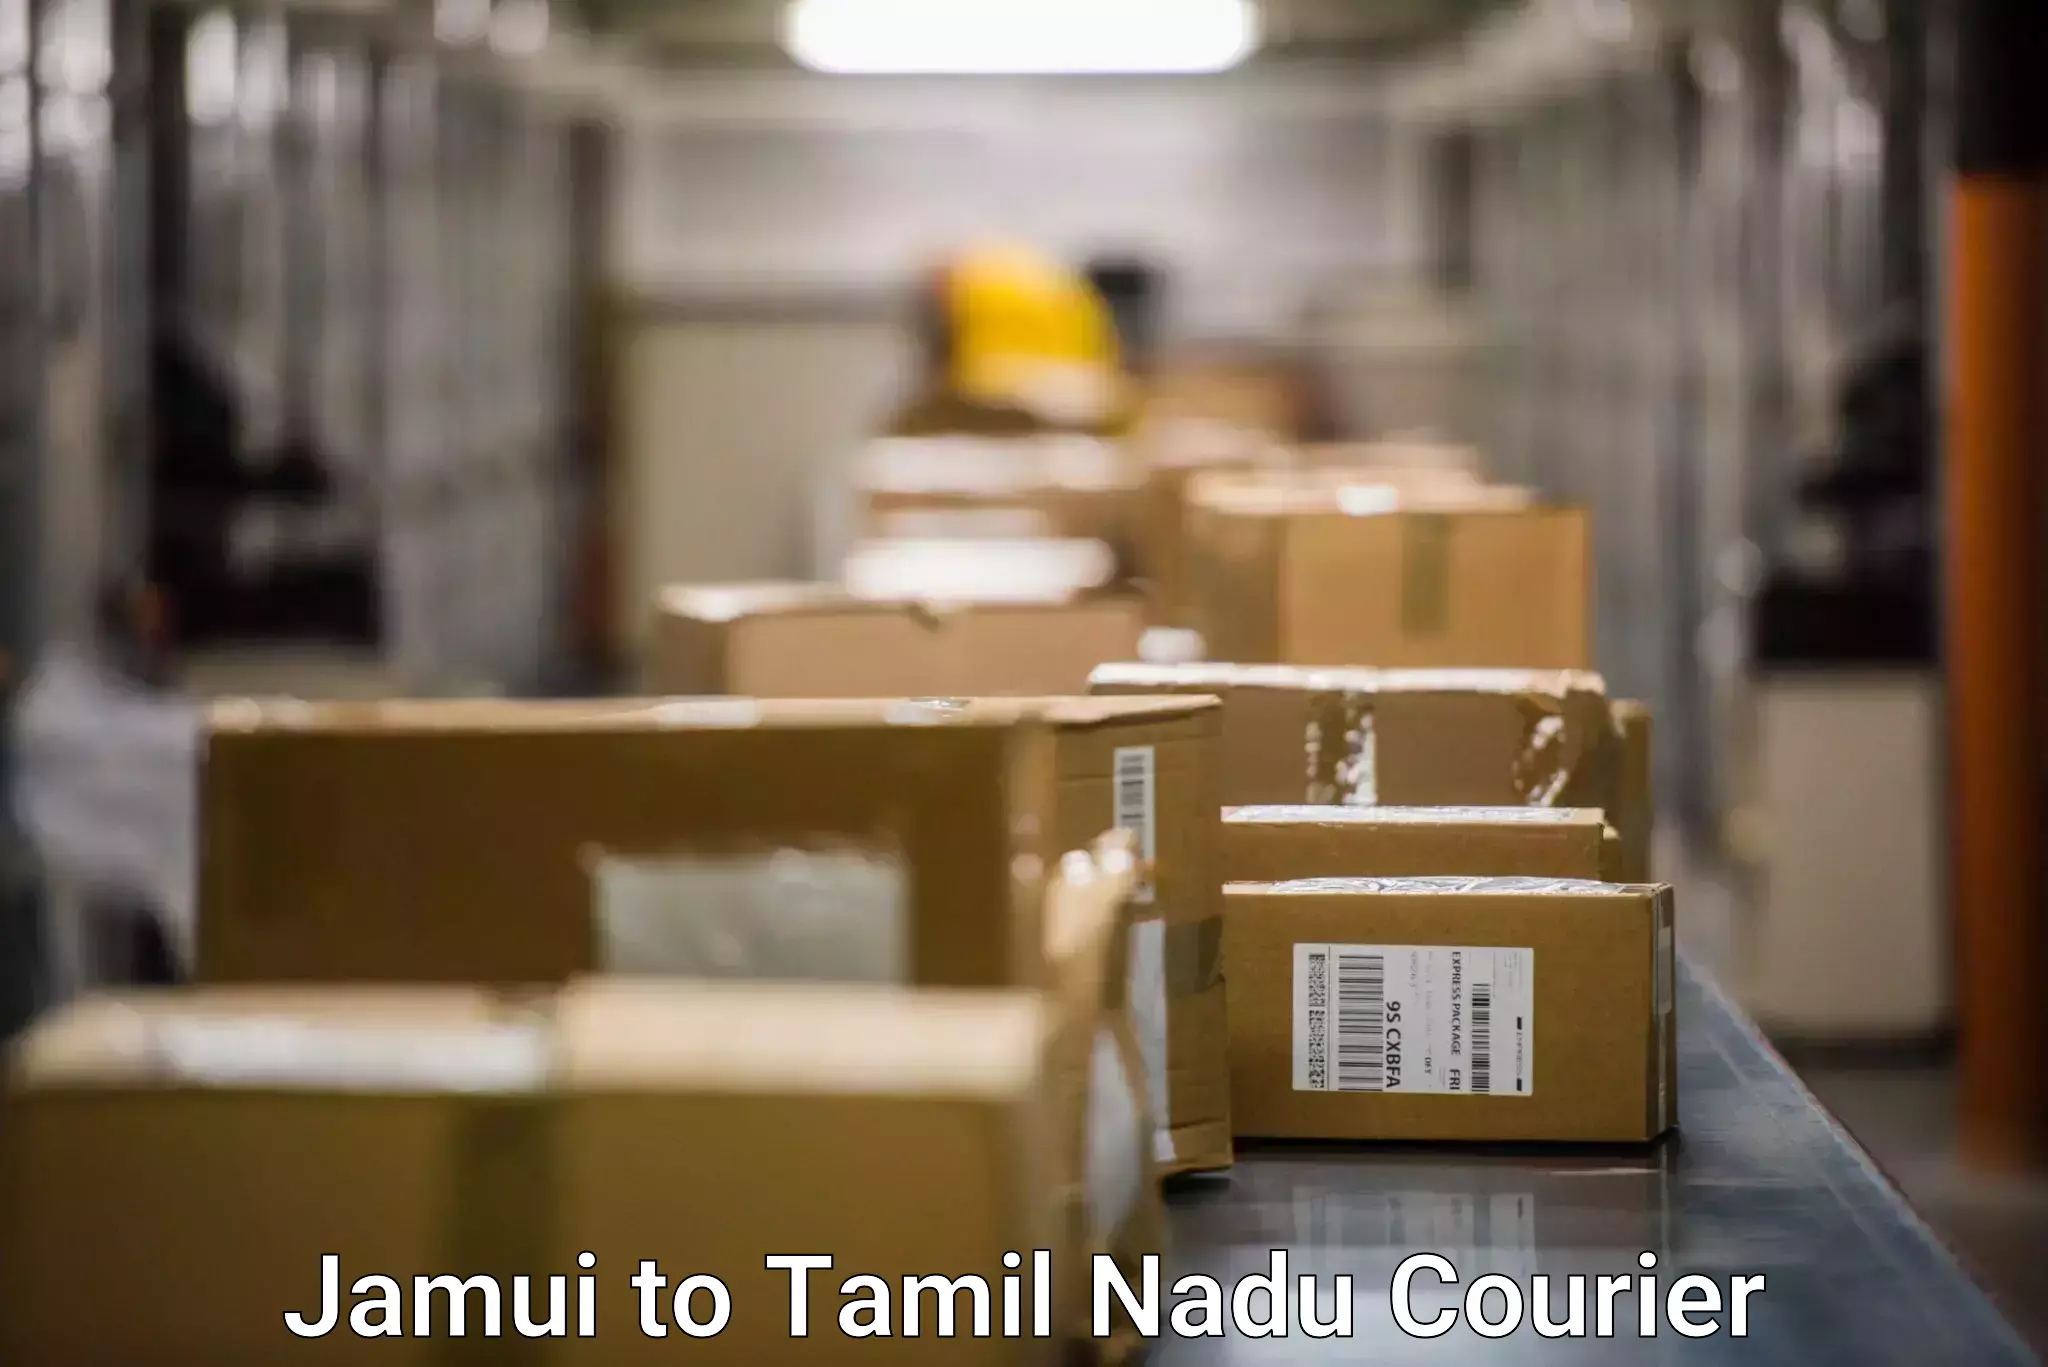 Courier service efficiency Jamui to Thiruvarur